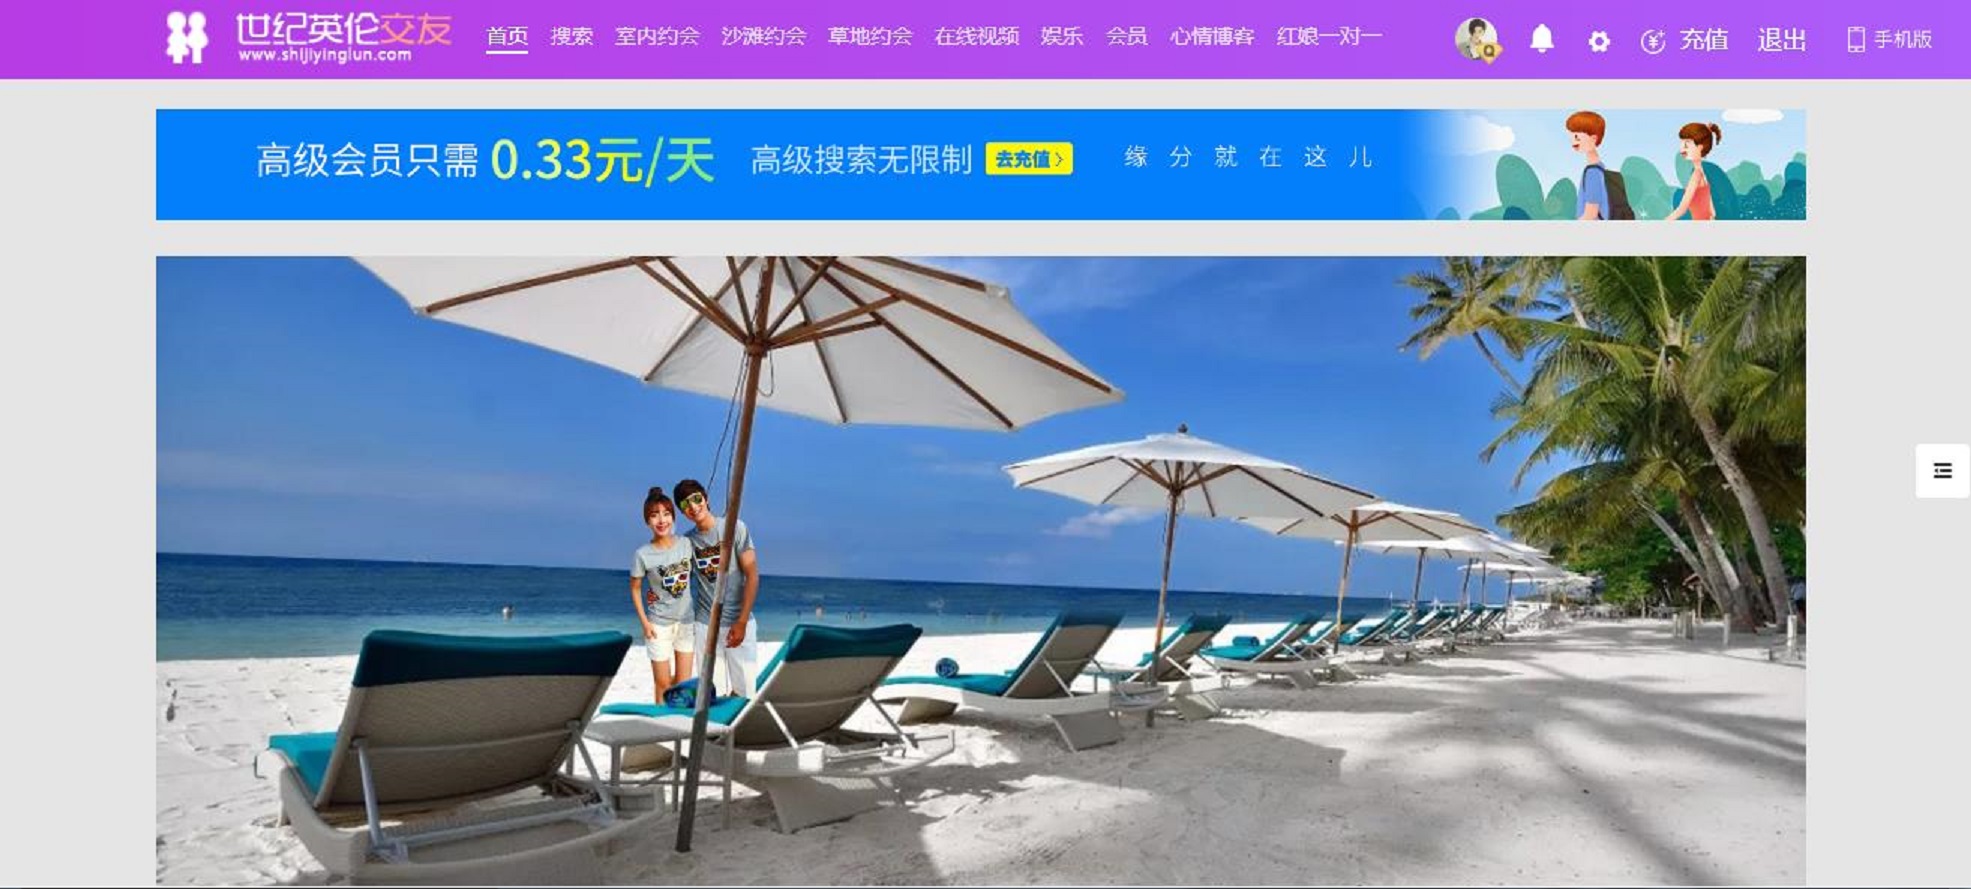 江苏约会相亲网站主要提供南京无锡和苏州的本地单身约会相亲婚恋交友